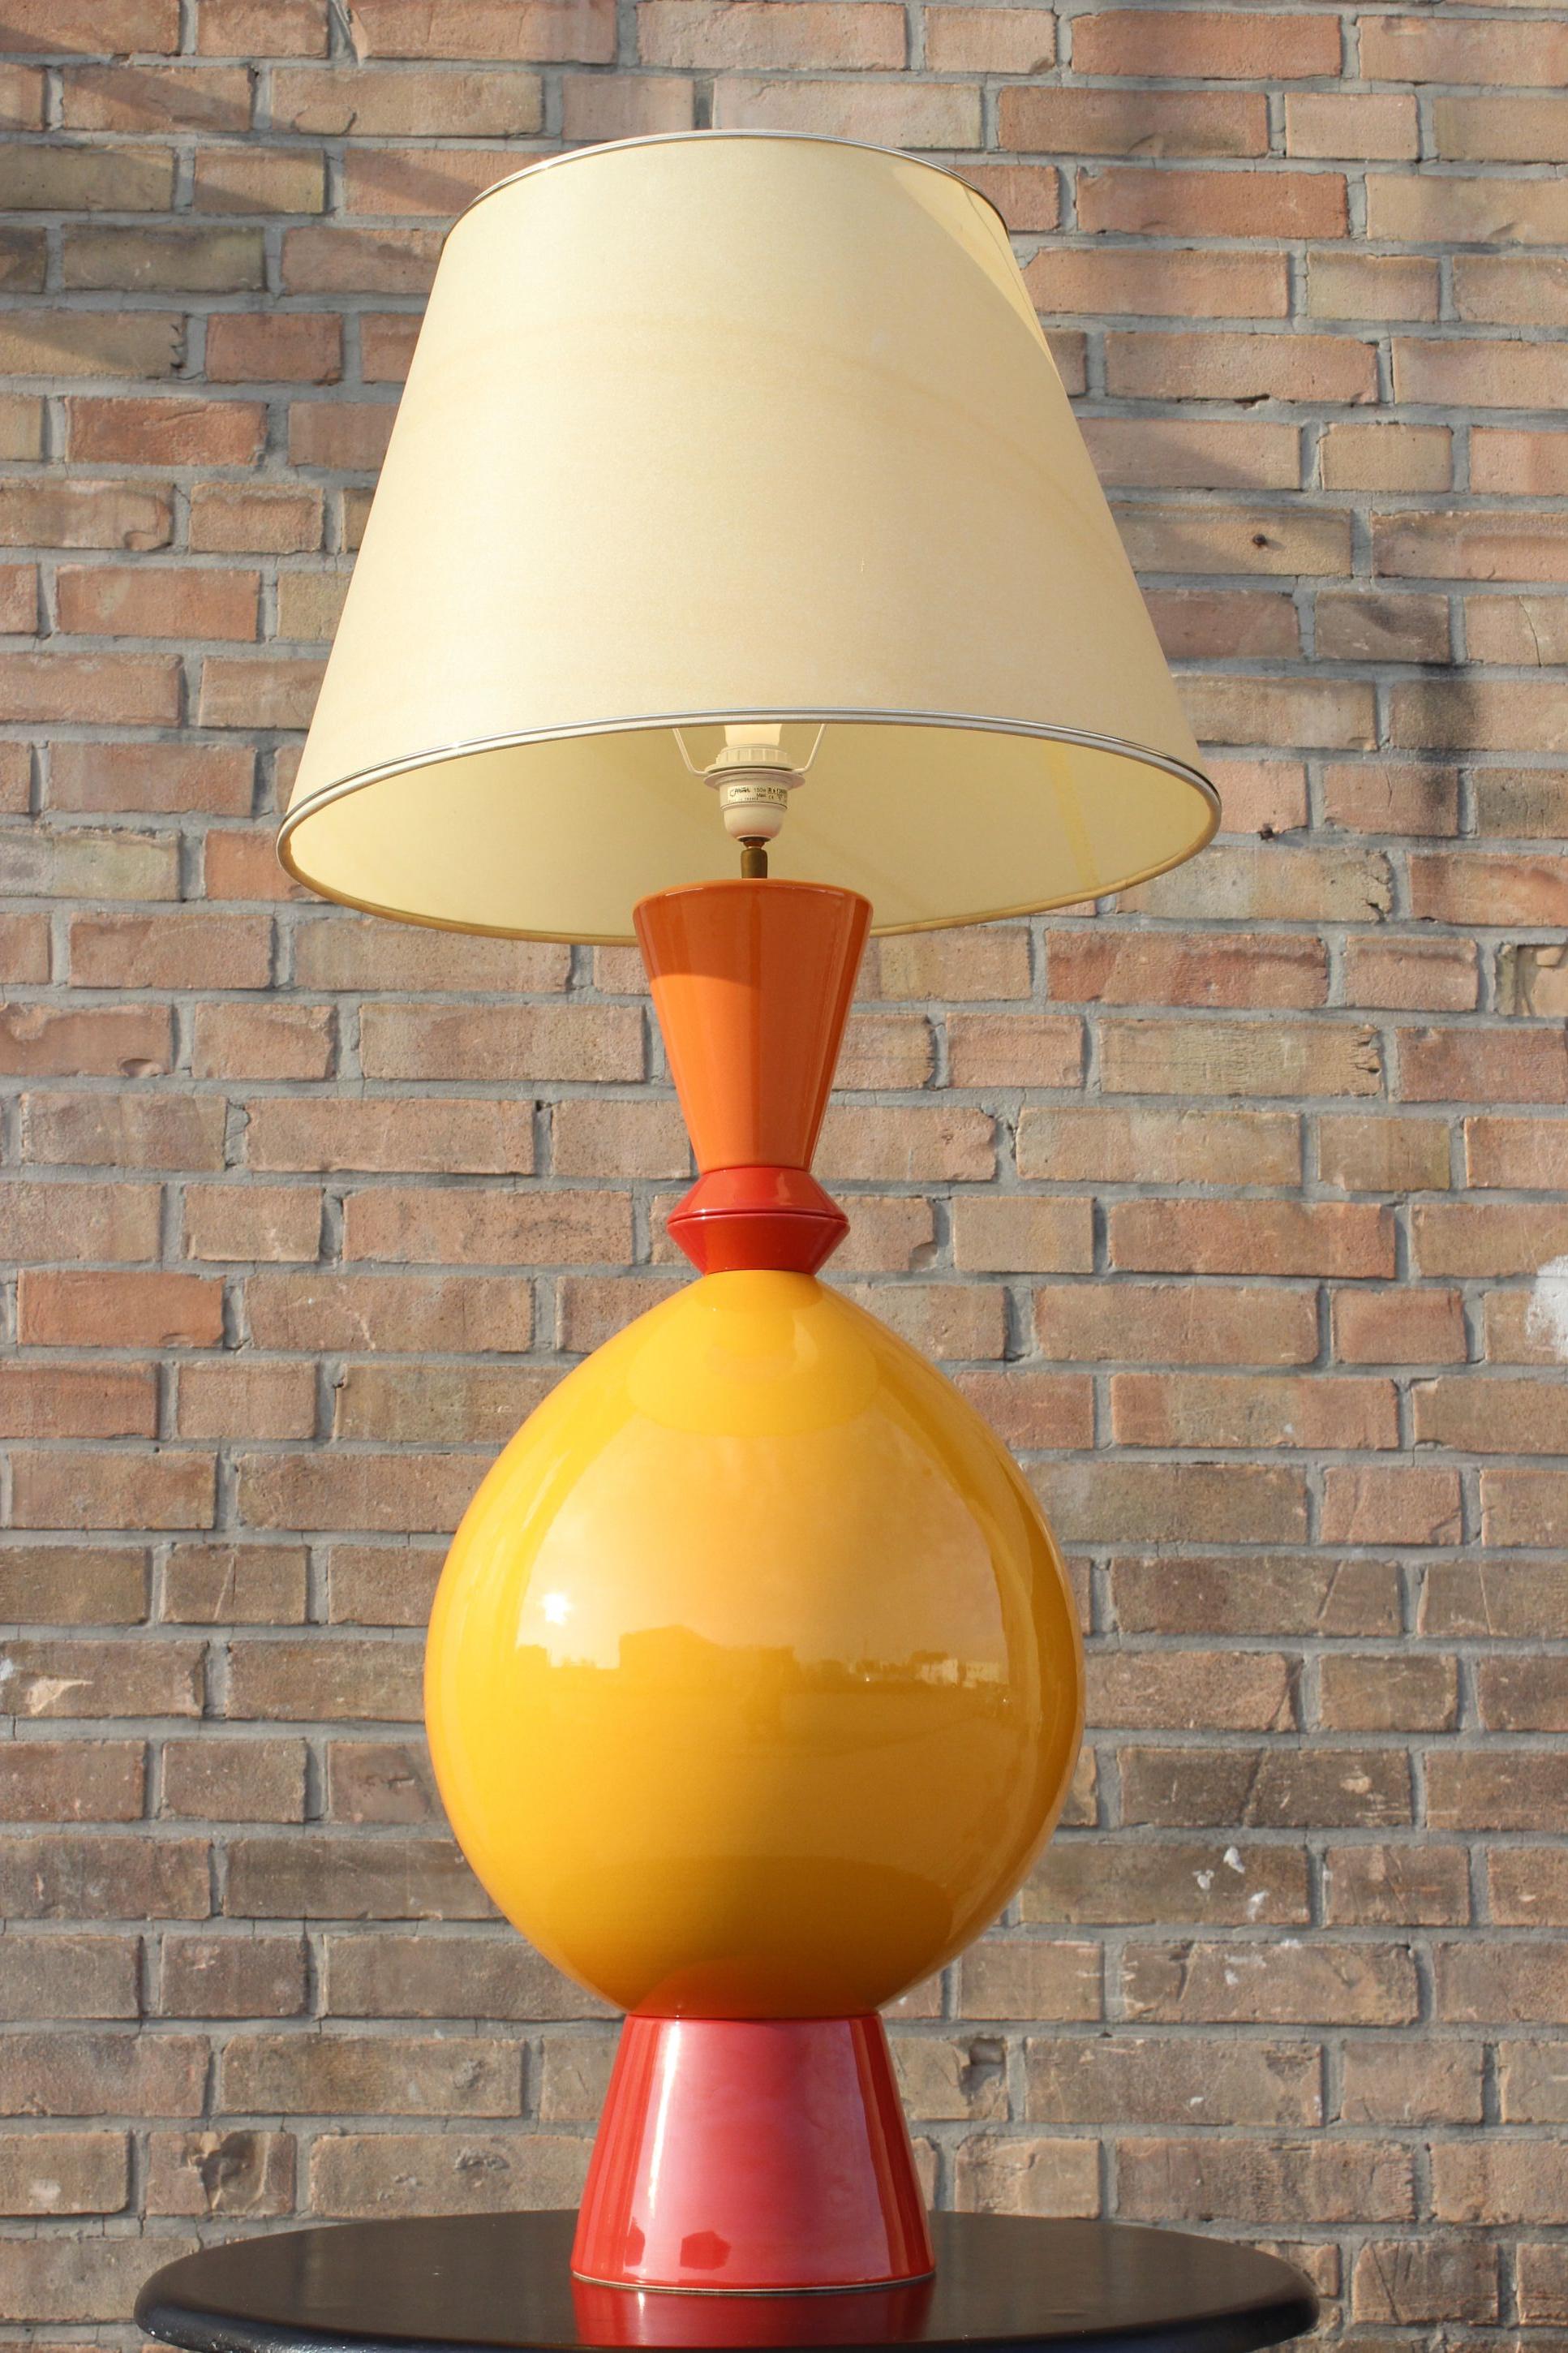 Große Keramiklampe von Lampes D'Albret, einer Schwesterfirma von Drimmer, die für ihre postmodernen Produktionen, meist aus glasierter Keramik, bekannt war. Die Lampe wurde Anfang der 1990er Jahre hergestellt. 

Der große Körper ähnelt einem Totem,